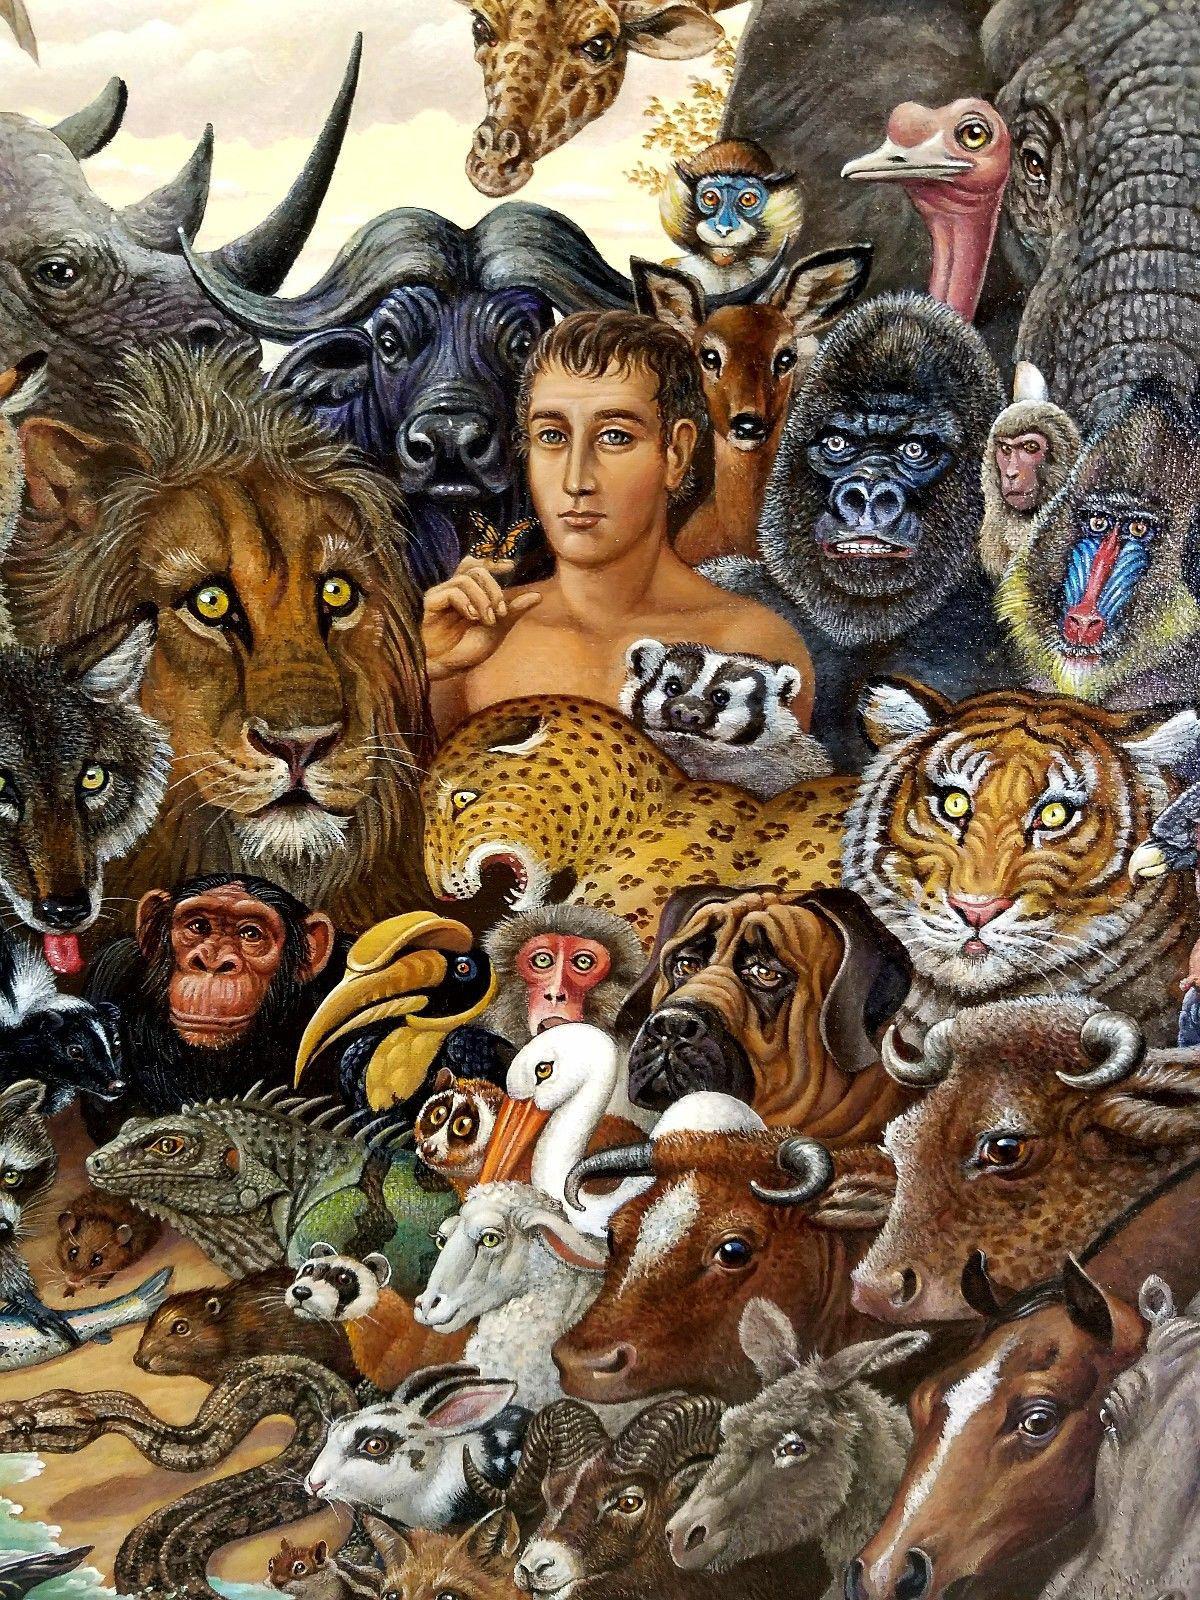 Tierreich, Zebra, Büffel, Löwe, Giraffen, Elefant, Affen, Tiger  Gorilla (Surrealismus), Painting, von Richard Hess